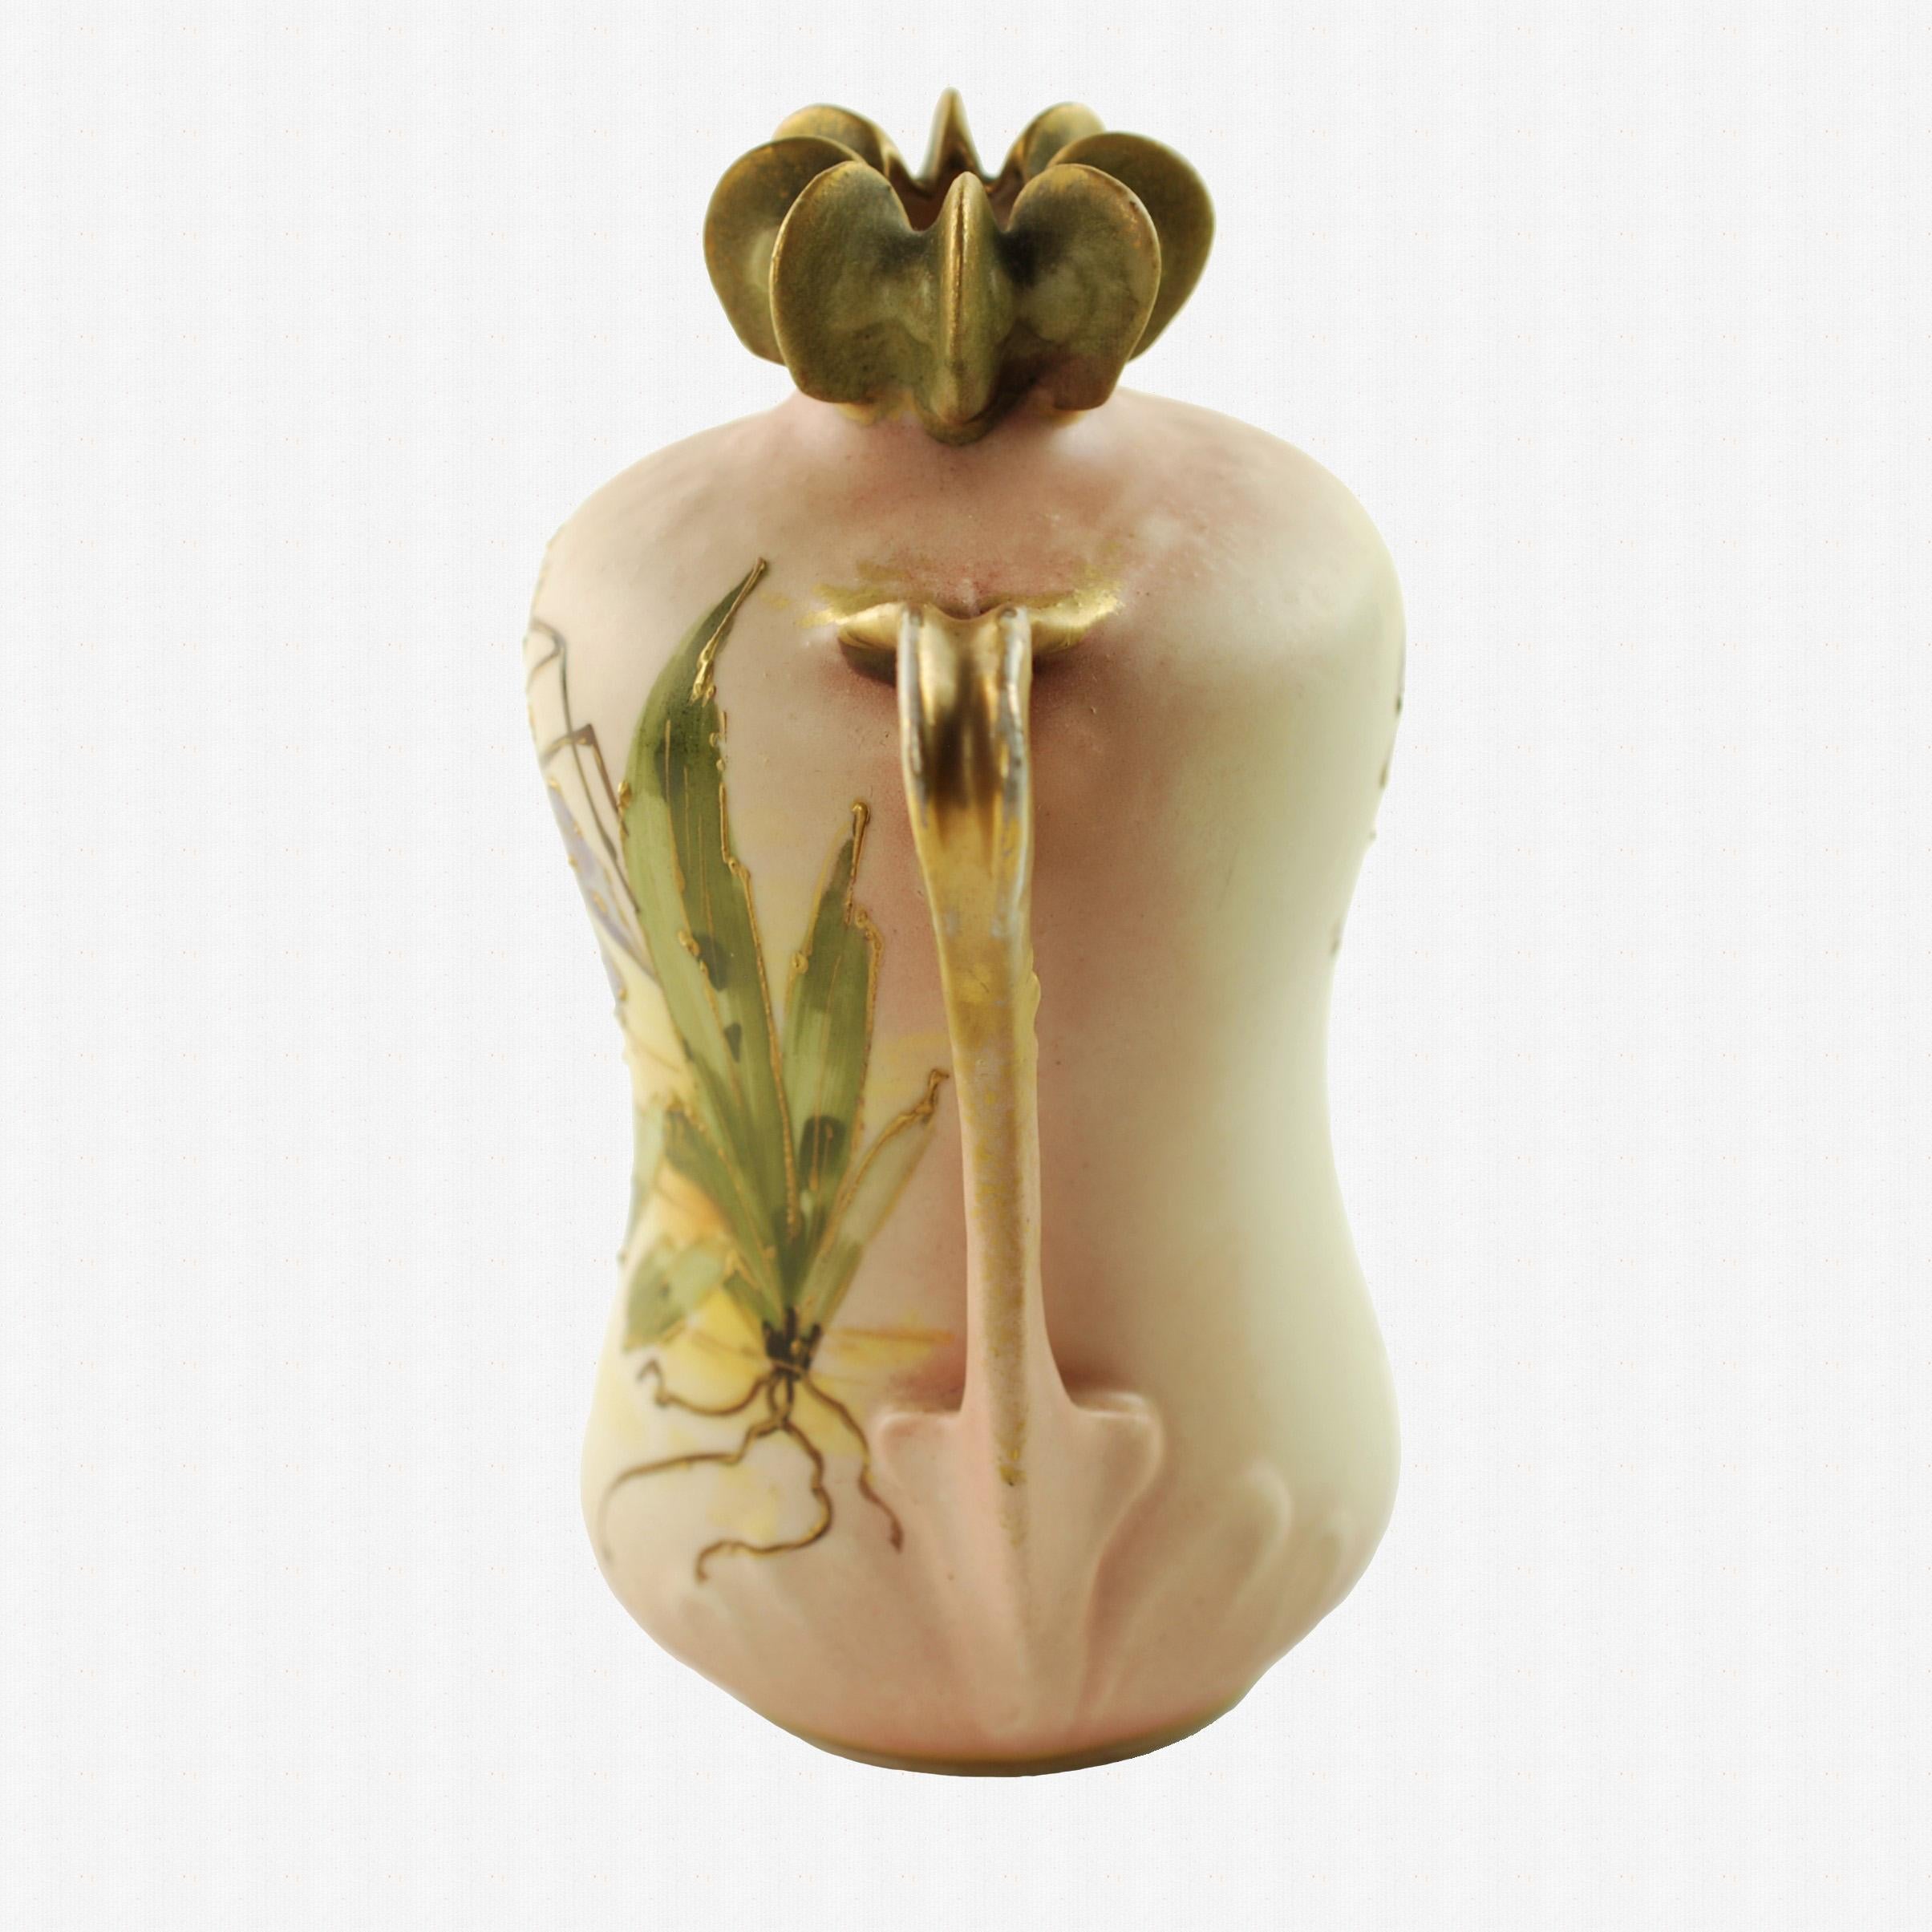 Ce vase en porcelaine Art nouveau du début du XXe siècle a été conçu par Paul Dachsel pour Riessner, Stellmacher & Kessel Amphora de Turn-Teplitz, en Bohème. La pièce a une forme organique de courge et présente le dessin de la bouche nervurée